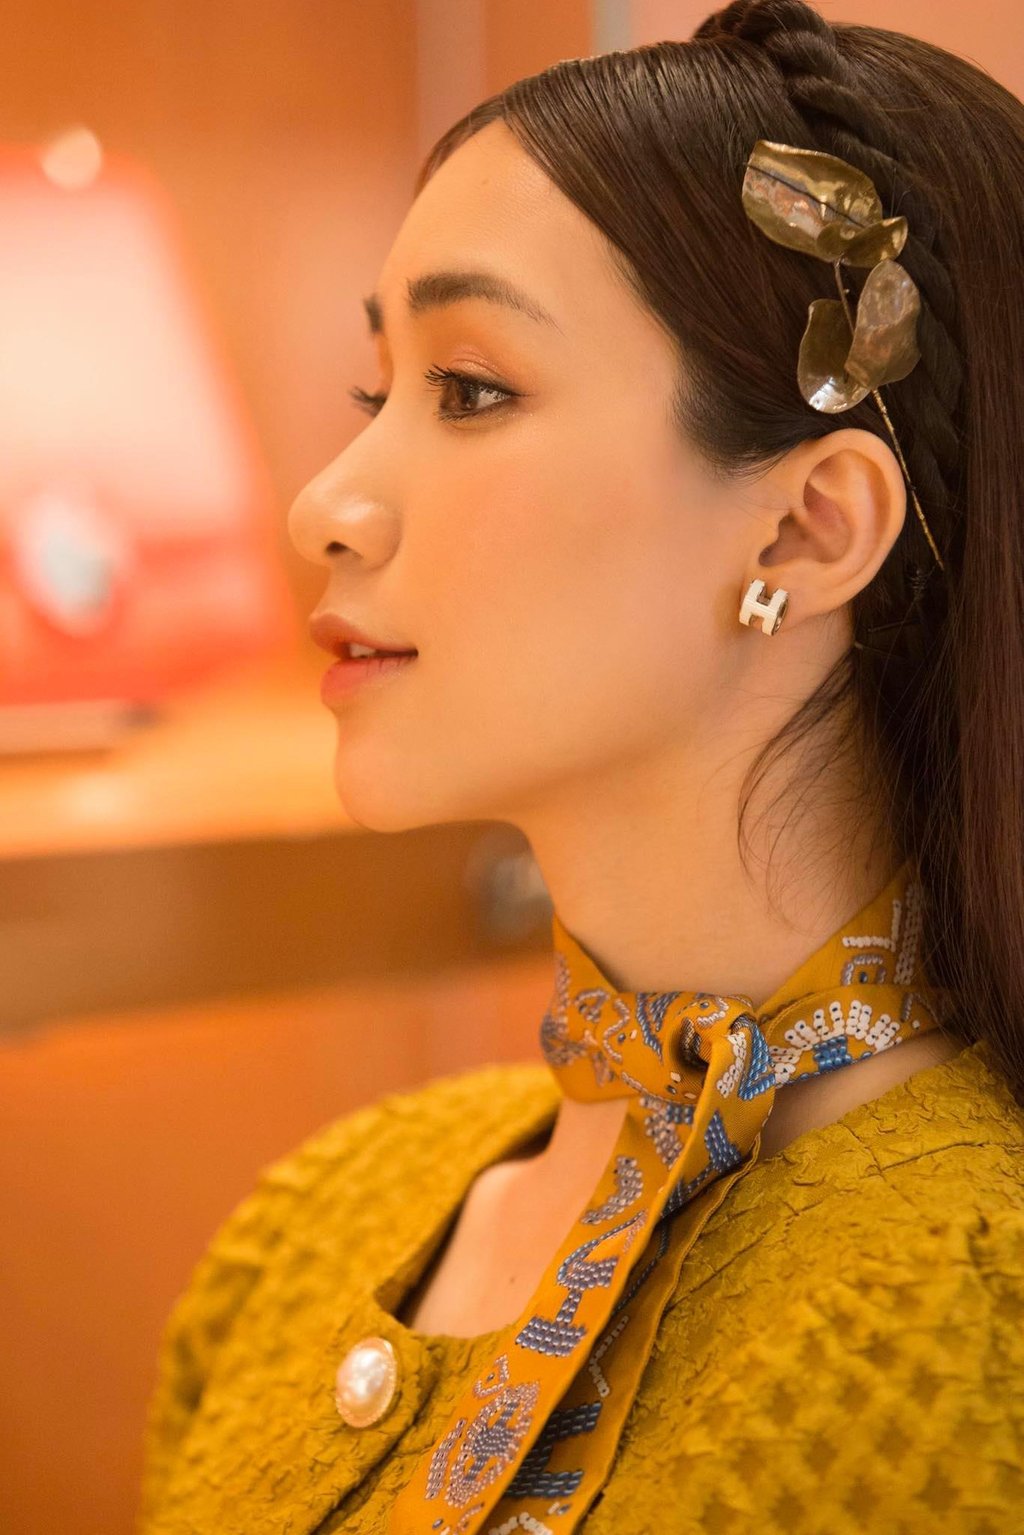 Hòa Minzy xinh xắn ngọt ngào với mái tóc để xõa tự nhiên thêm băng đô tóc tết điệu đà chưa kể kẹp tóc xinh xắn càng tô điểm nhan sắc của cô.